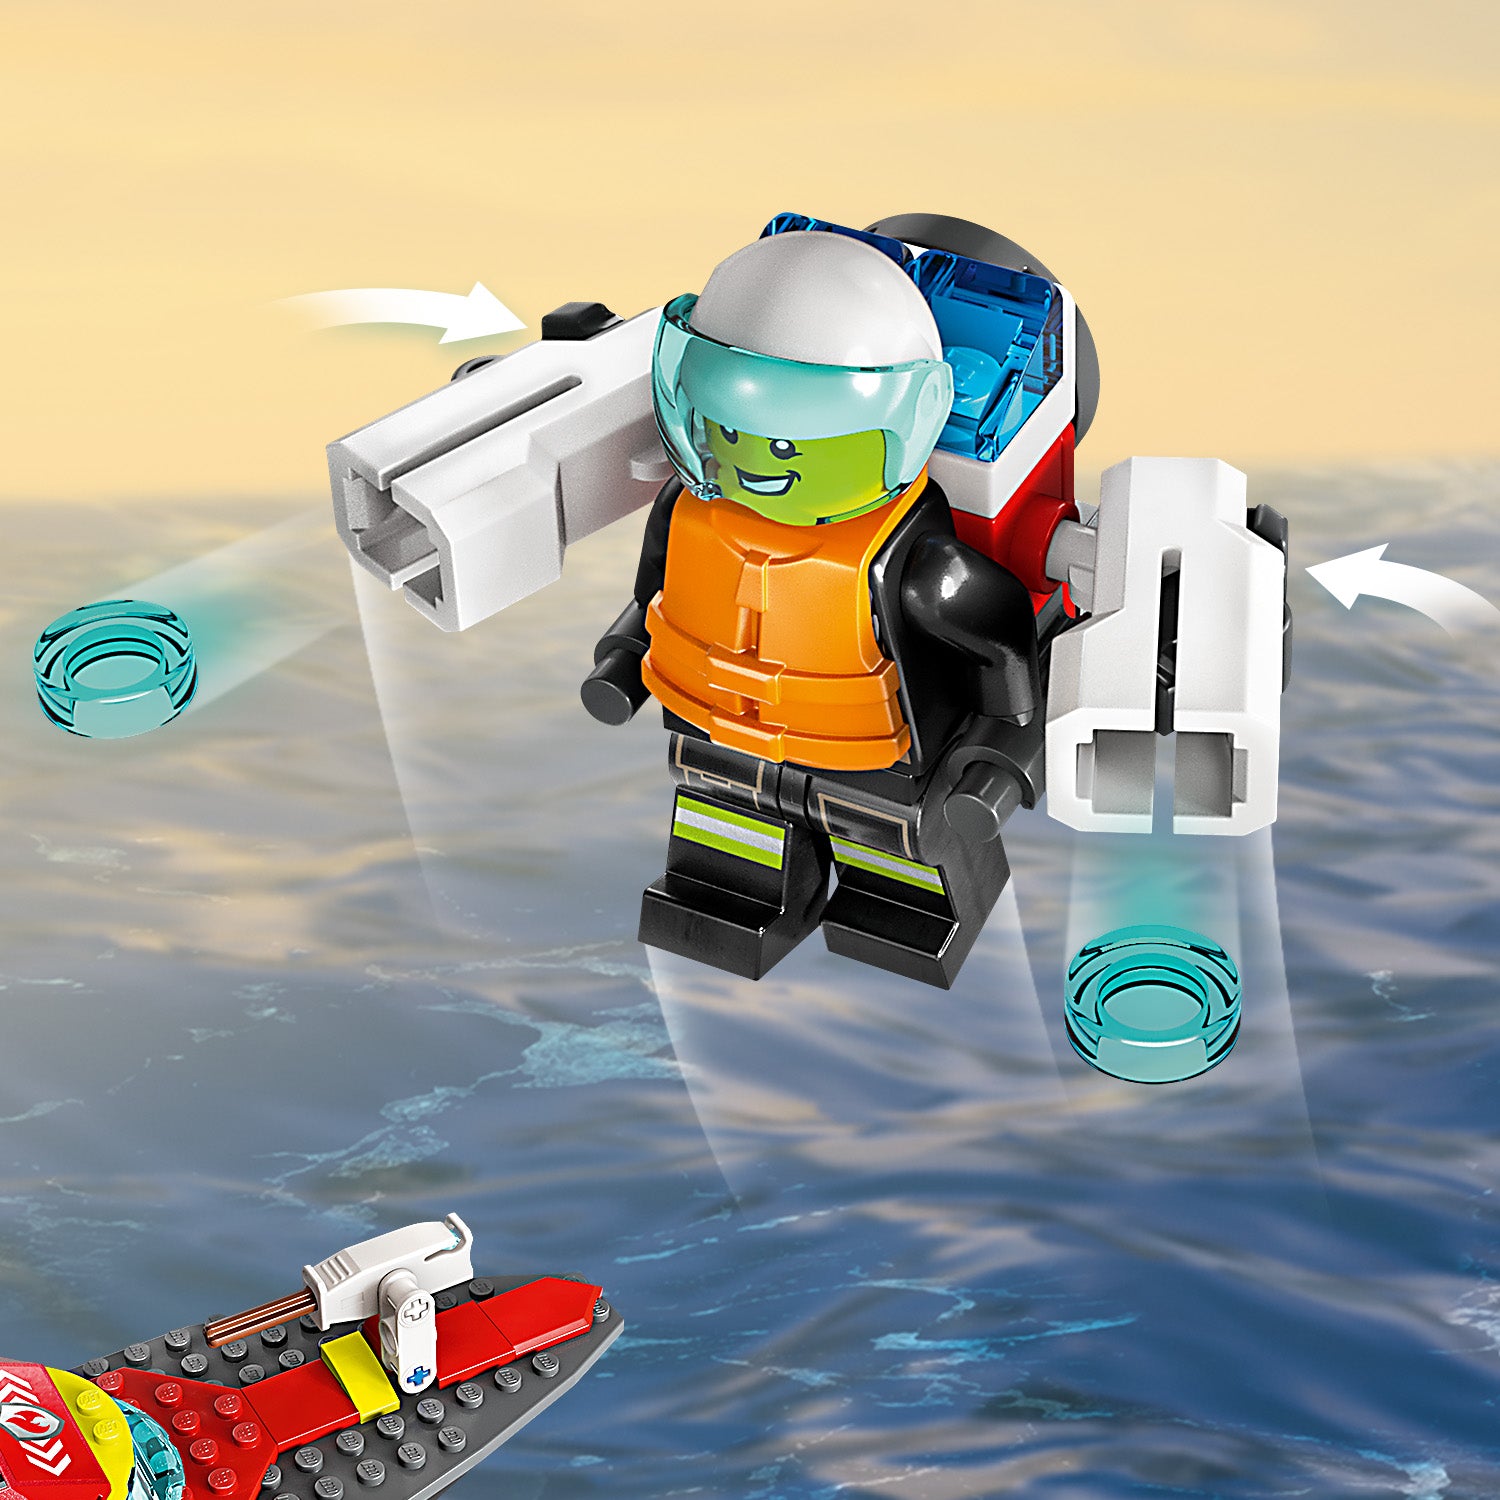 Lego 60373 Fire Rescue Boat